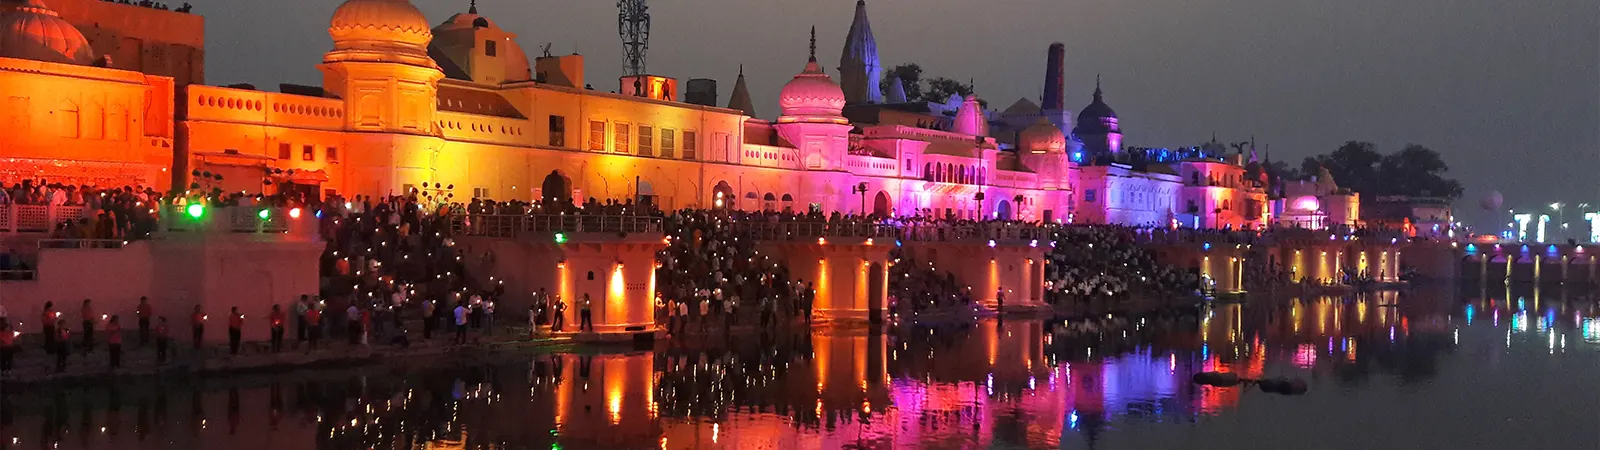 अयोध्या के मशहूर पर्यटन स्थल